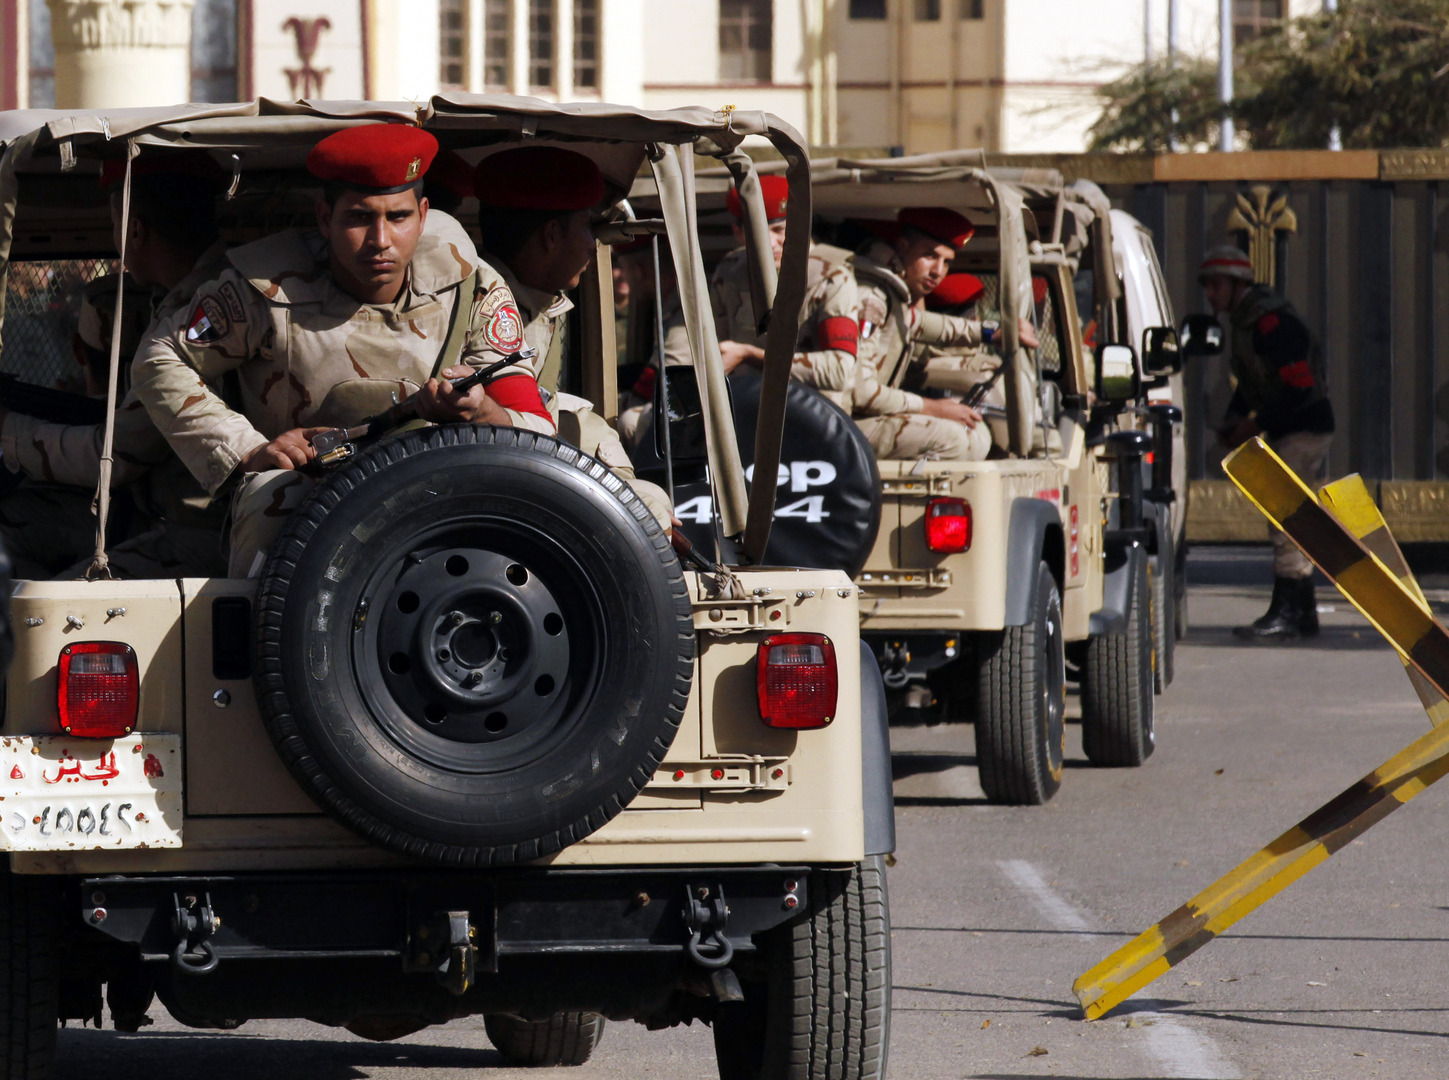 الجيش المصري يعلن تنفيذ عملية كبيرة في سيناء (صور)